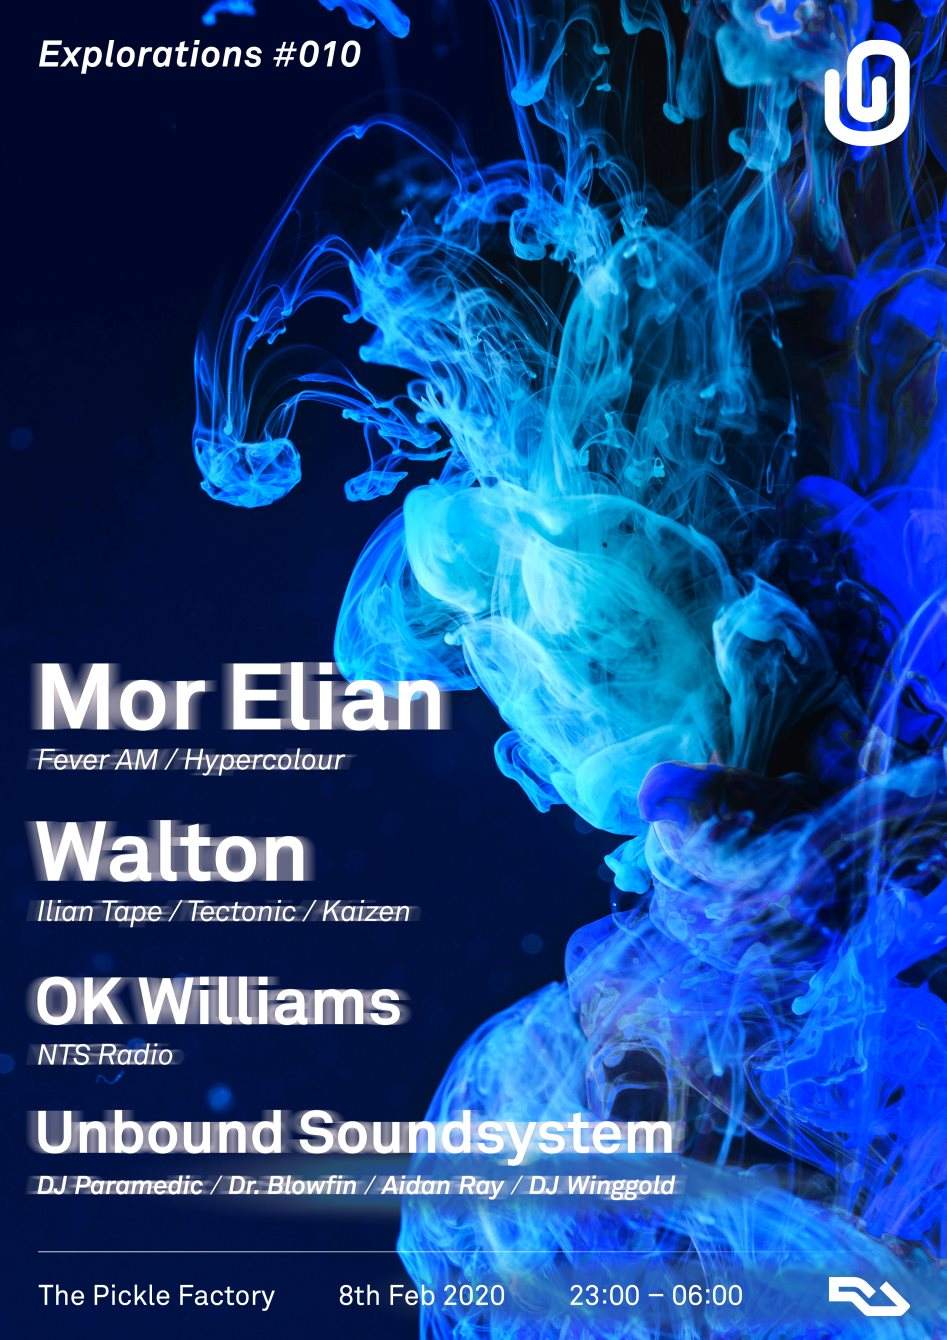 Unbound presents: Mor Elian, Walton, OK Williams & Unbound Soundsystem - フライヤー表